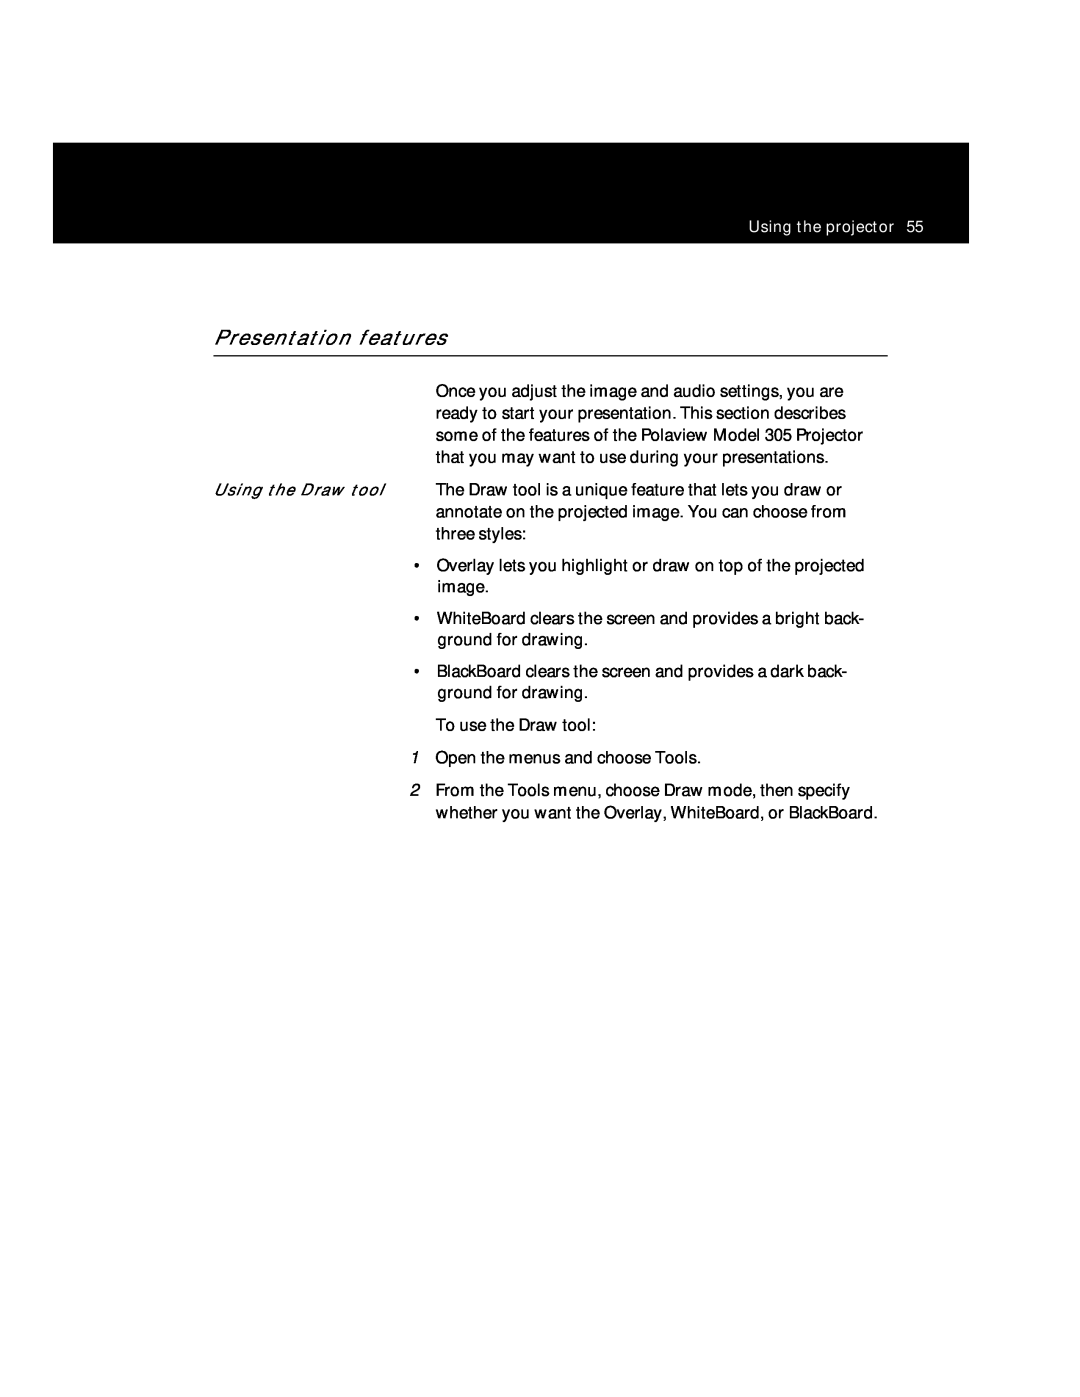 Polaroid Polaview 305 manual Presentation features 